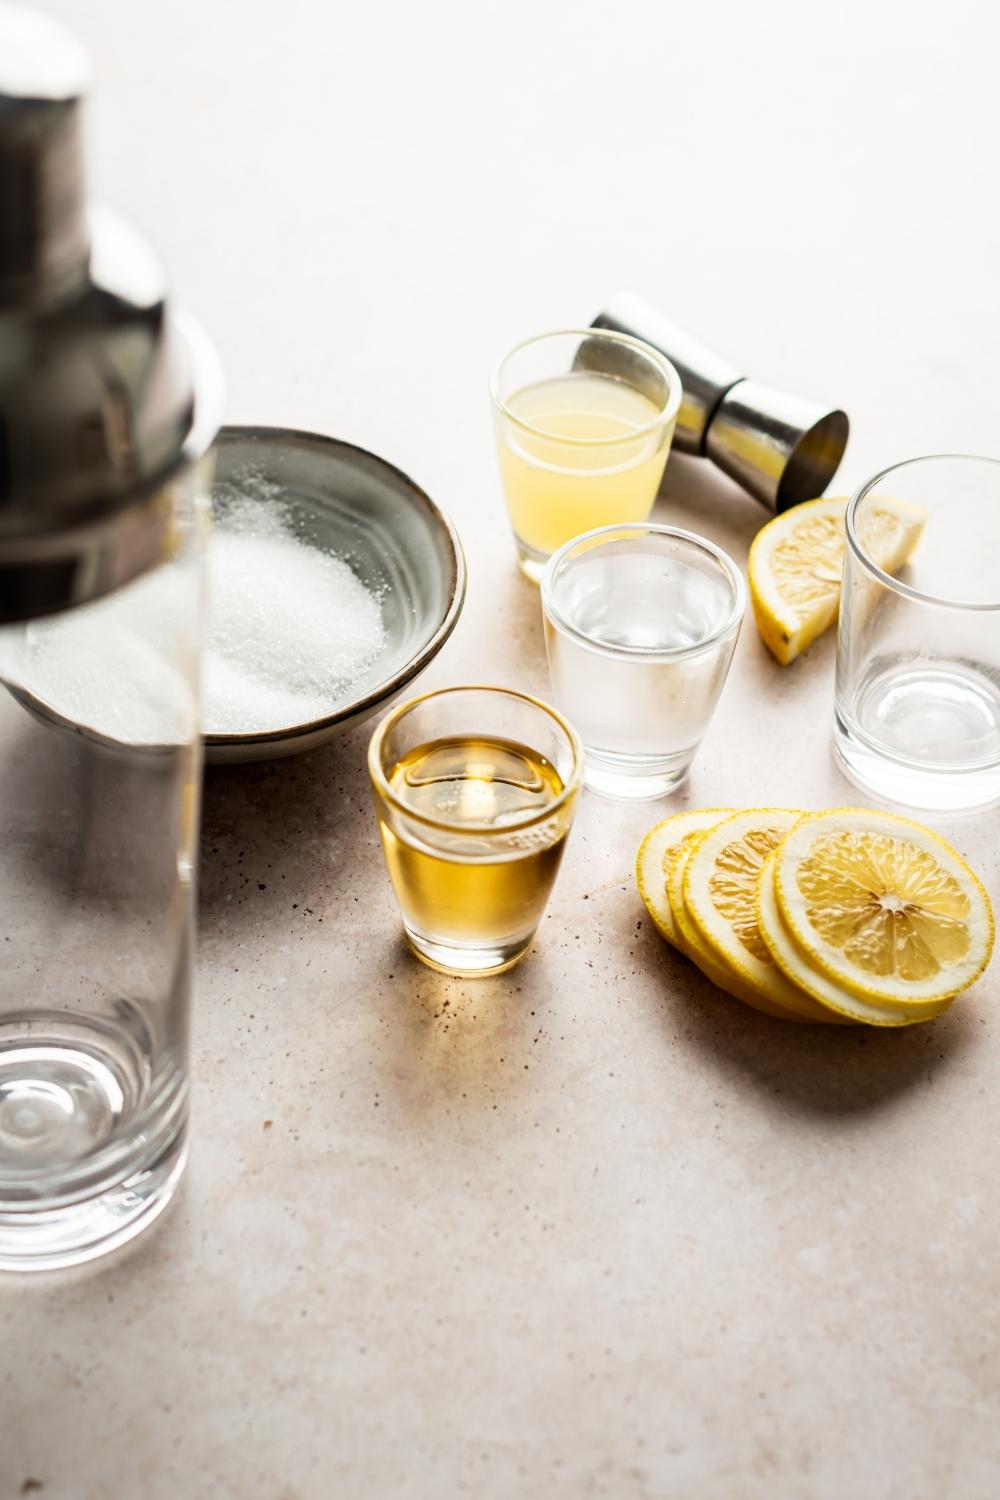 lemon drop shot ingredients